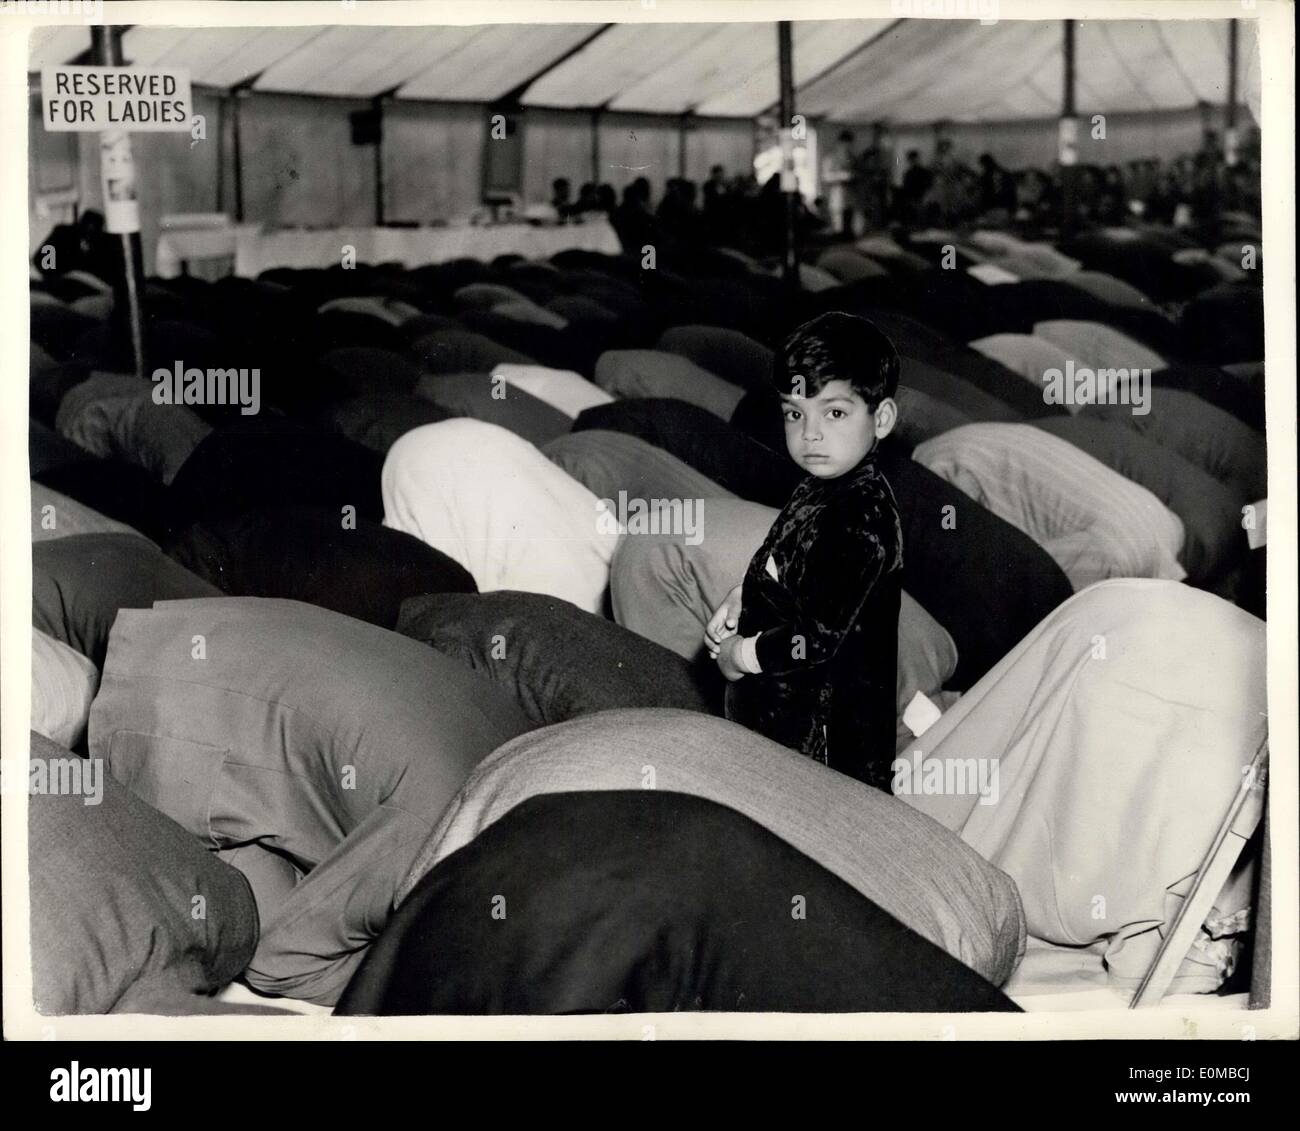 Juin 04, 1954 - Petit homme - et maintenant ? Un jeune dans une mer de dos : le garçon se tenait dans la mosquée sombre où tous mais il était à genoux. Seul dans une mer de dos perdu dans la prière silencieuse. Peu étonnant, puis, le noir, les yeux ronds de quatre ans Khurshid Ahmed remplir d'alarme subite. Sa situation est illustrée à l'aile de la Mosquée Shah Jehan, Surrey, où les musulmans se sont réunis hier à la célébration de la ''Id al-Fitr Festival. Banque D'Images